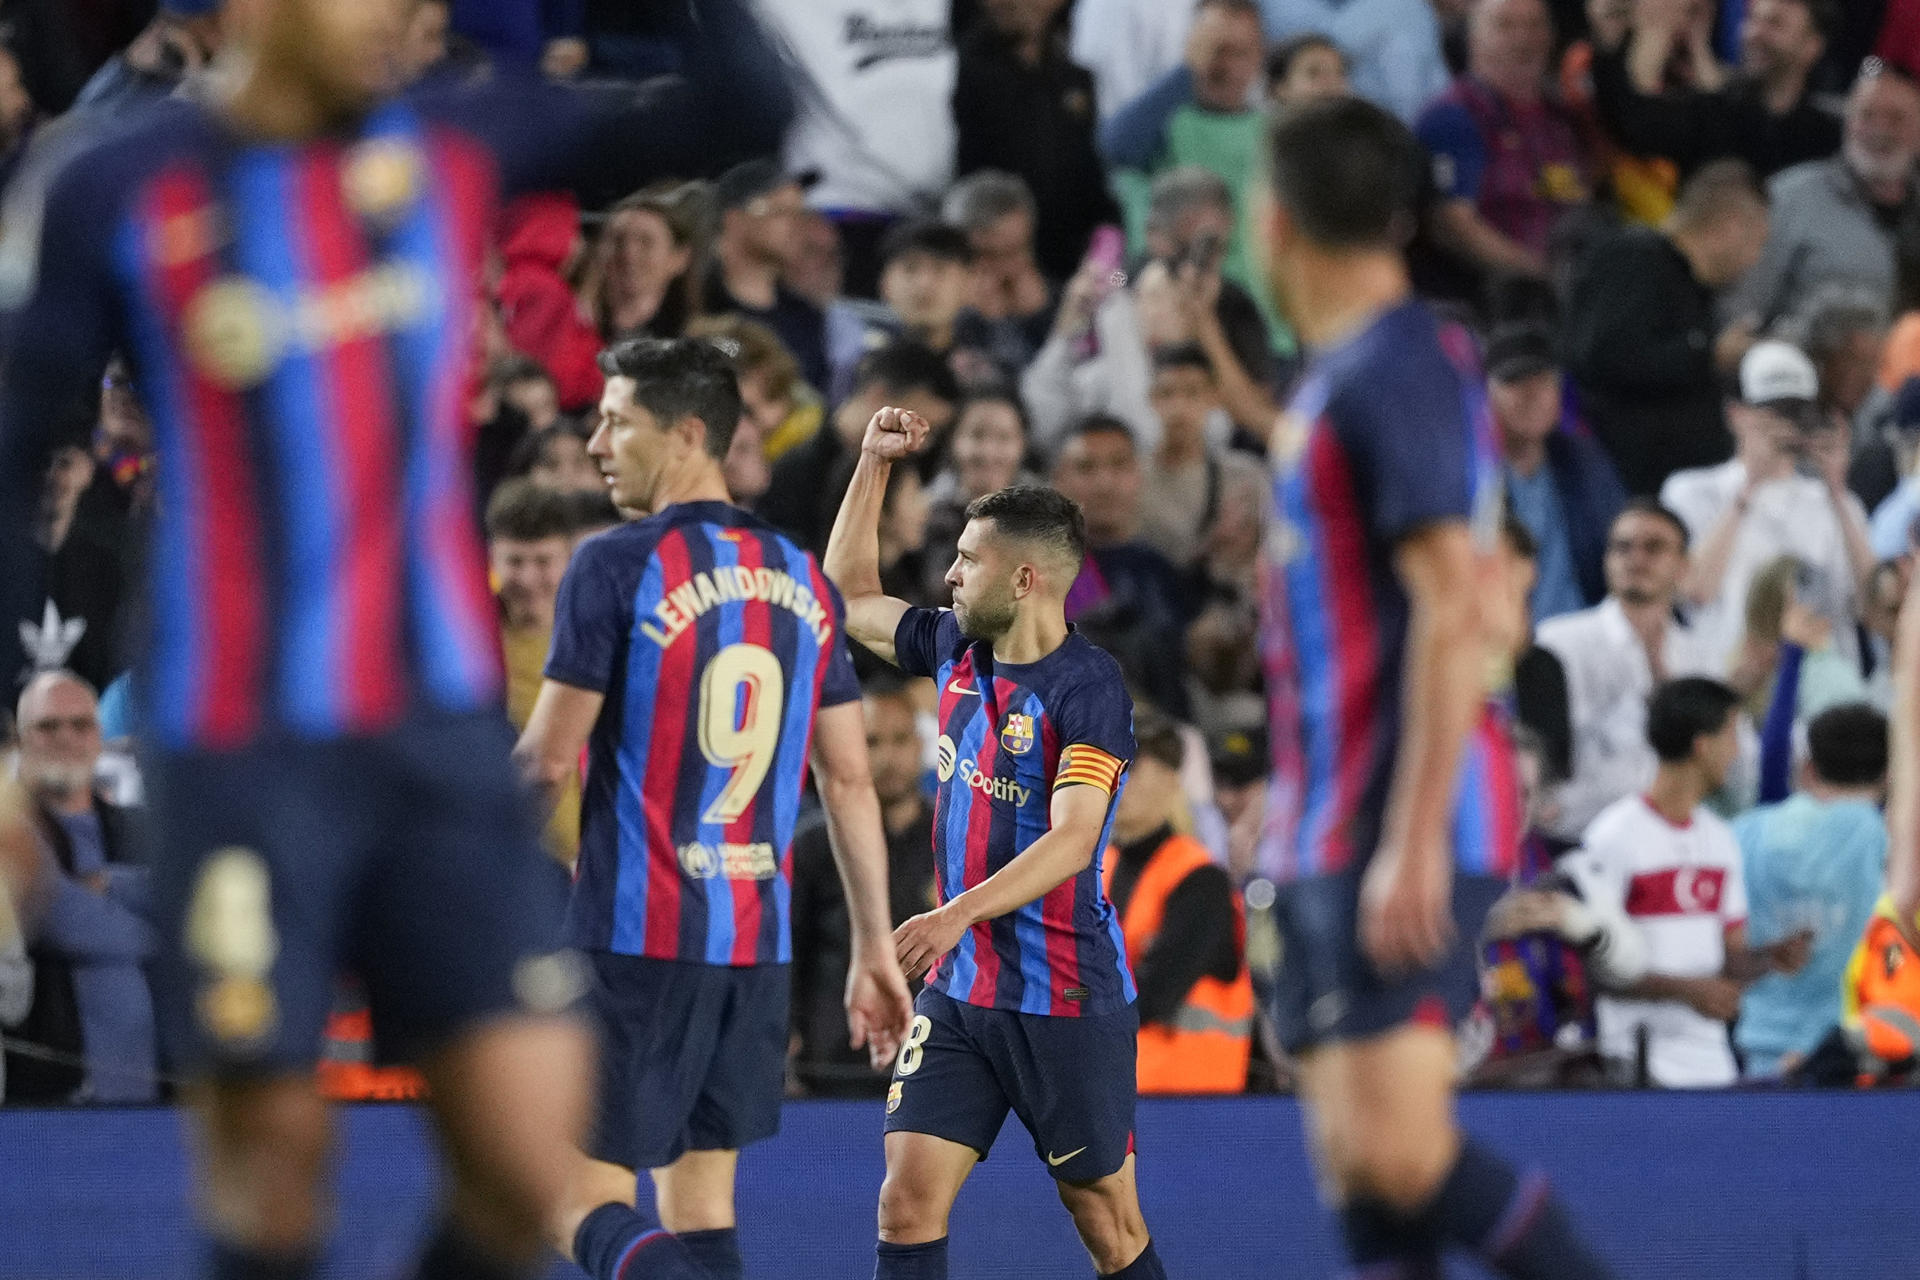 El defensa del FC Barcelona Jordi Alba (2d) celebra la victoria de su equipo tras finalizar el partido correspondiente a la jornada 33 de LaLiga Santander que disputaron FC Barcelona y CA Osasuna en el Spotify Camp Nou de la Ciudad Condal. EFE/ Alejandro Garcia